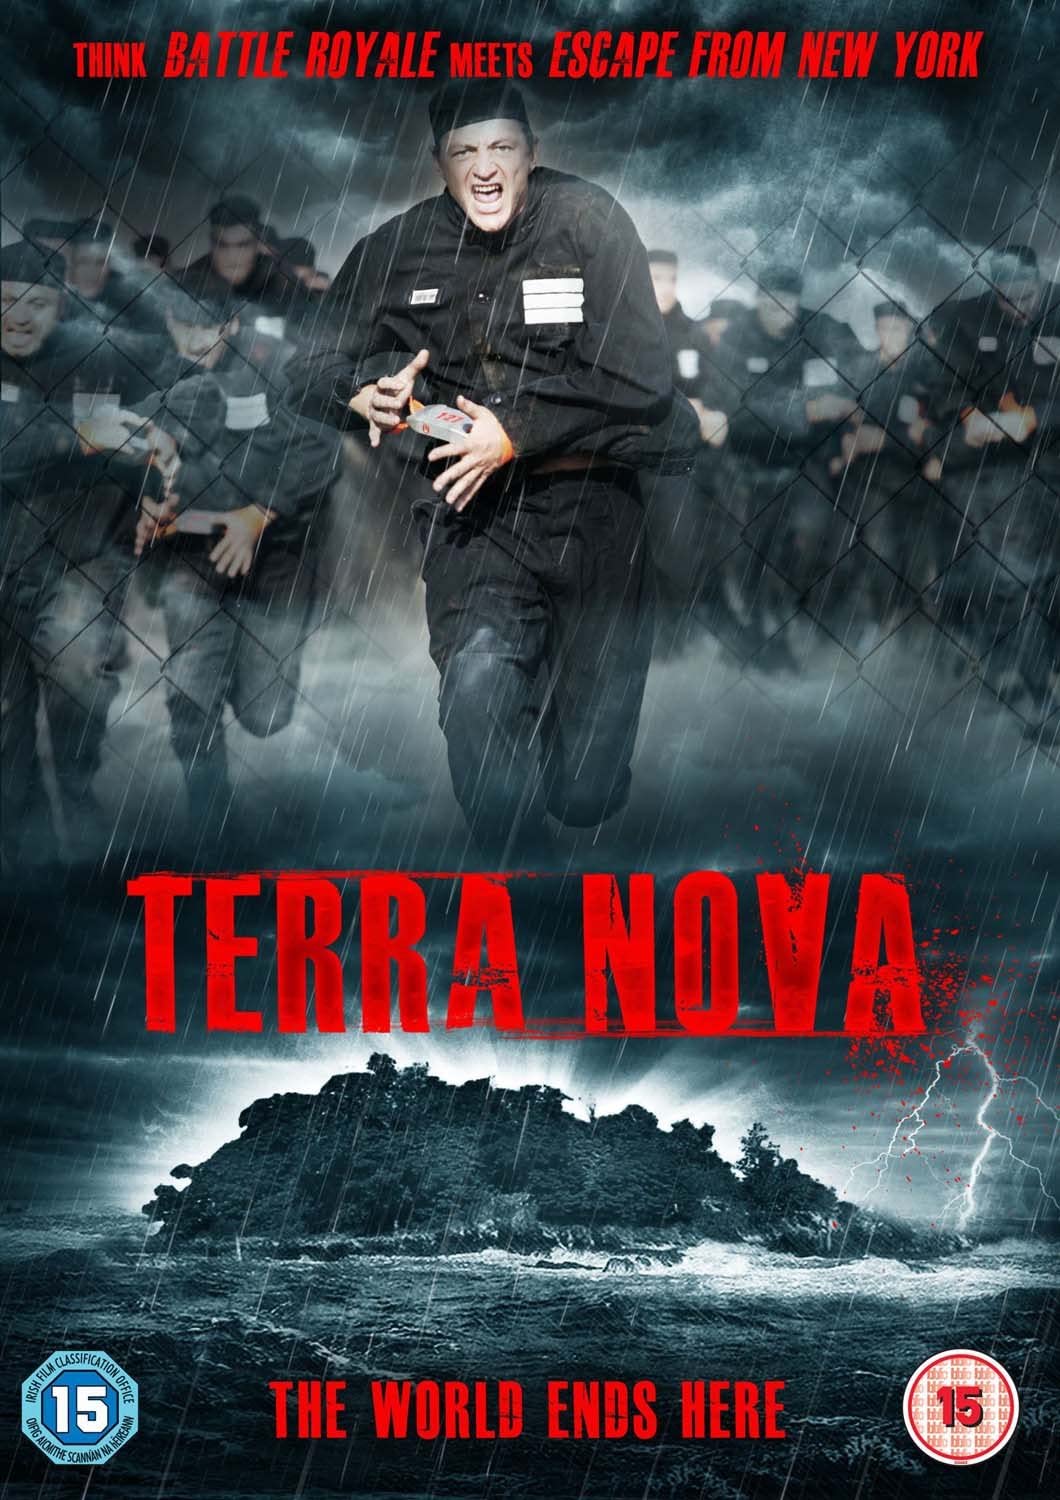 Terra Nova (2008) Screenshot 1 